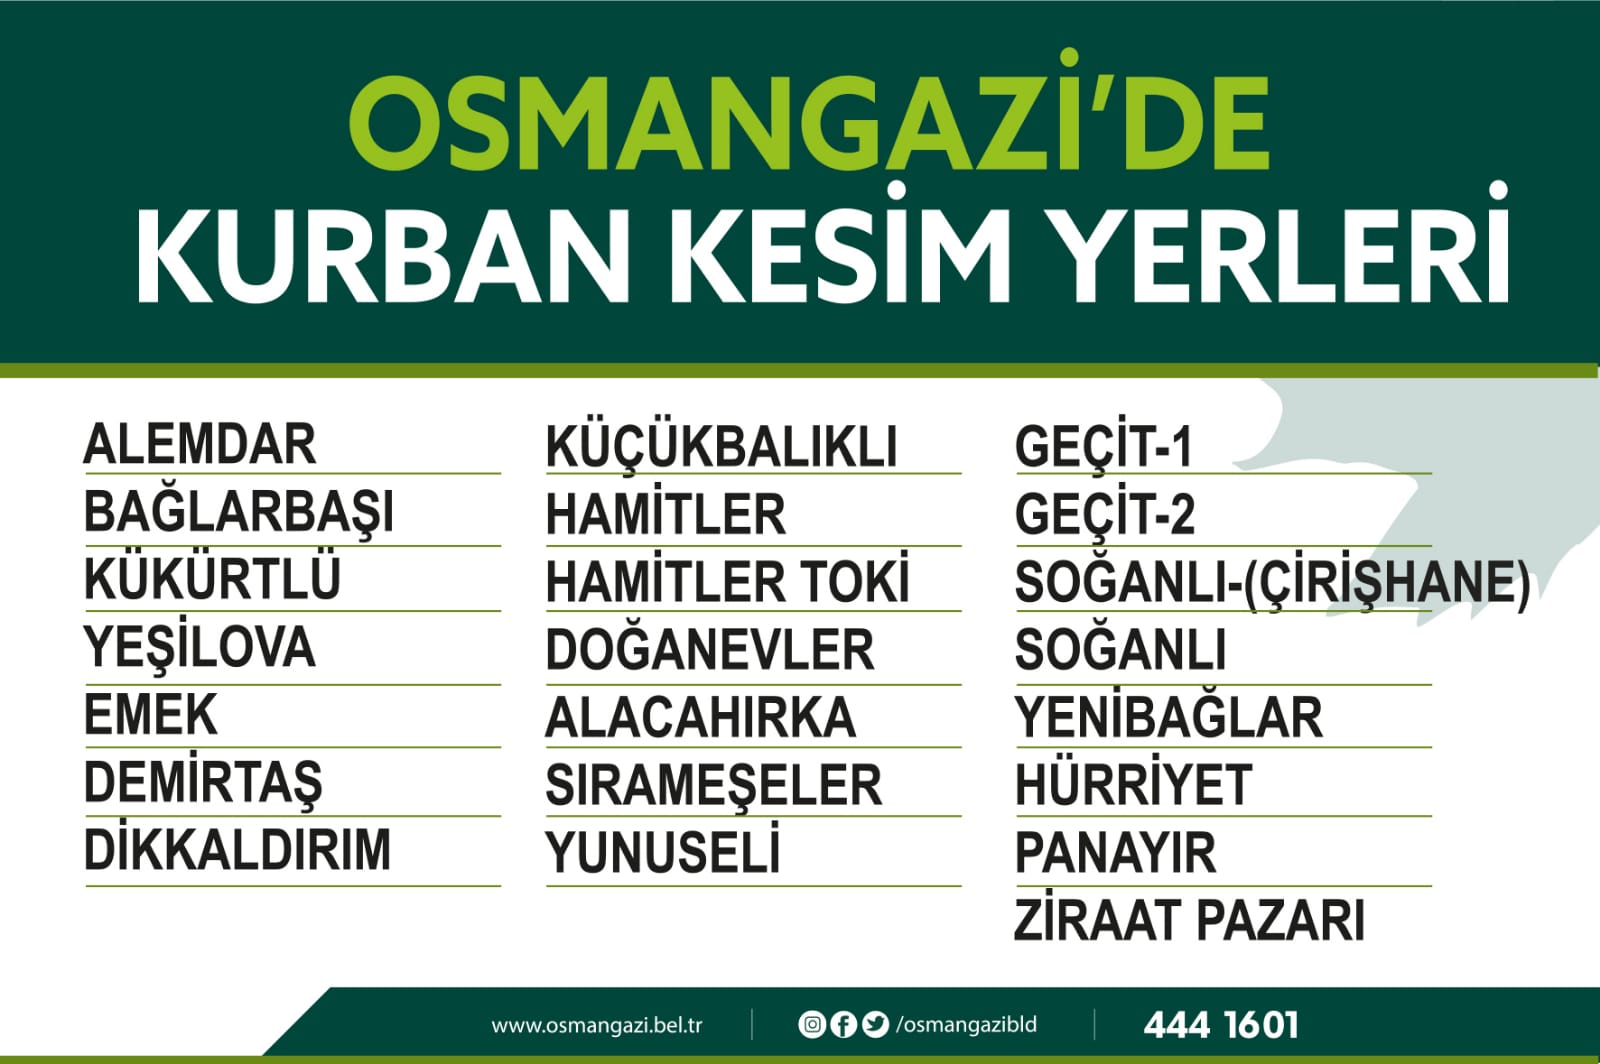 Osmangazi Belediyesi kurban kesim yerlerini açıkladı